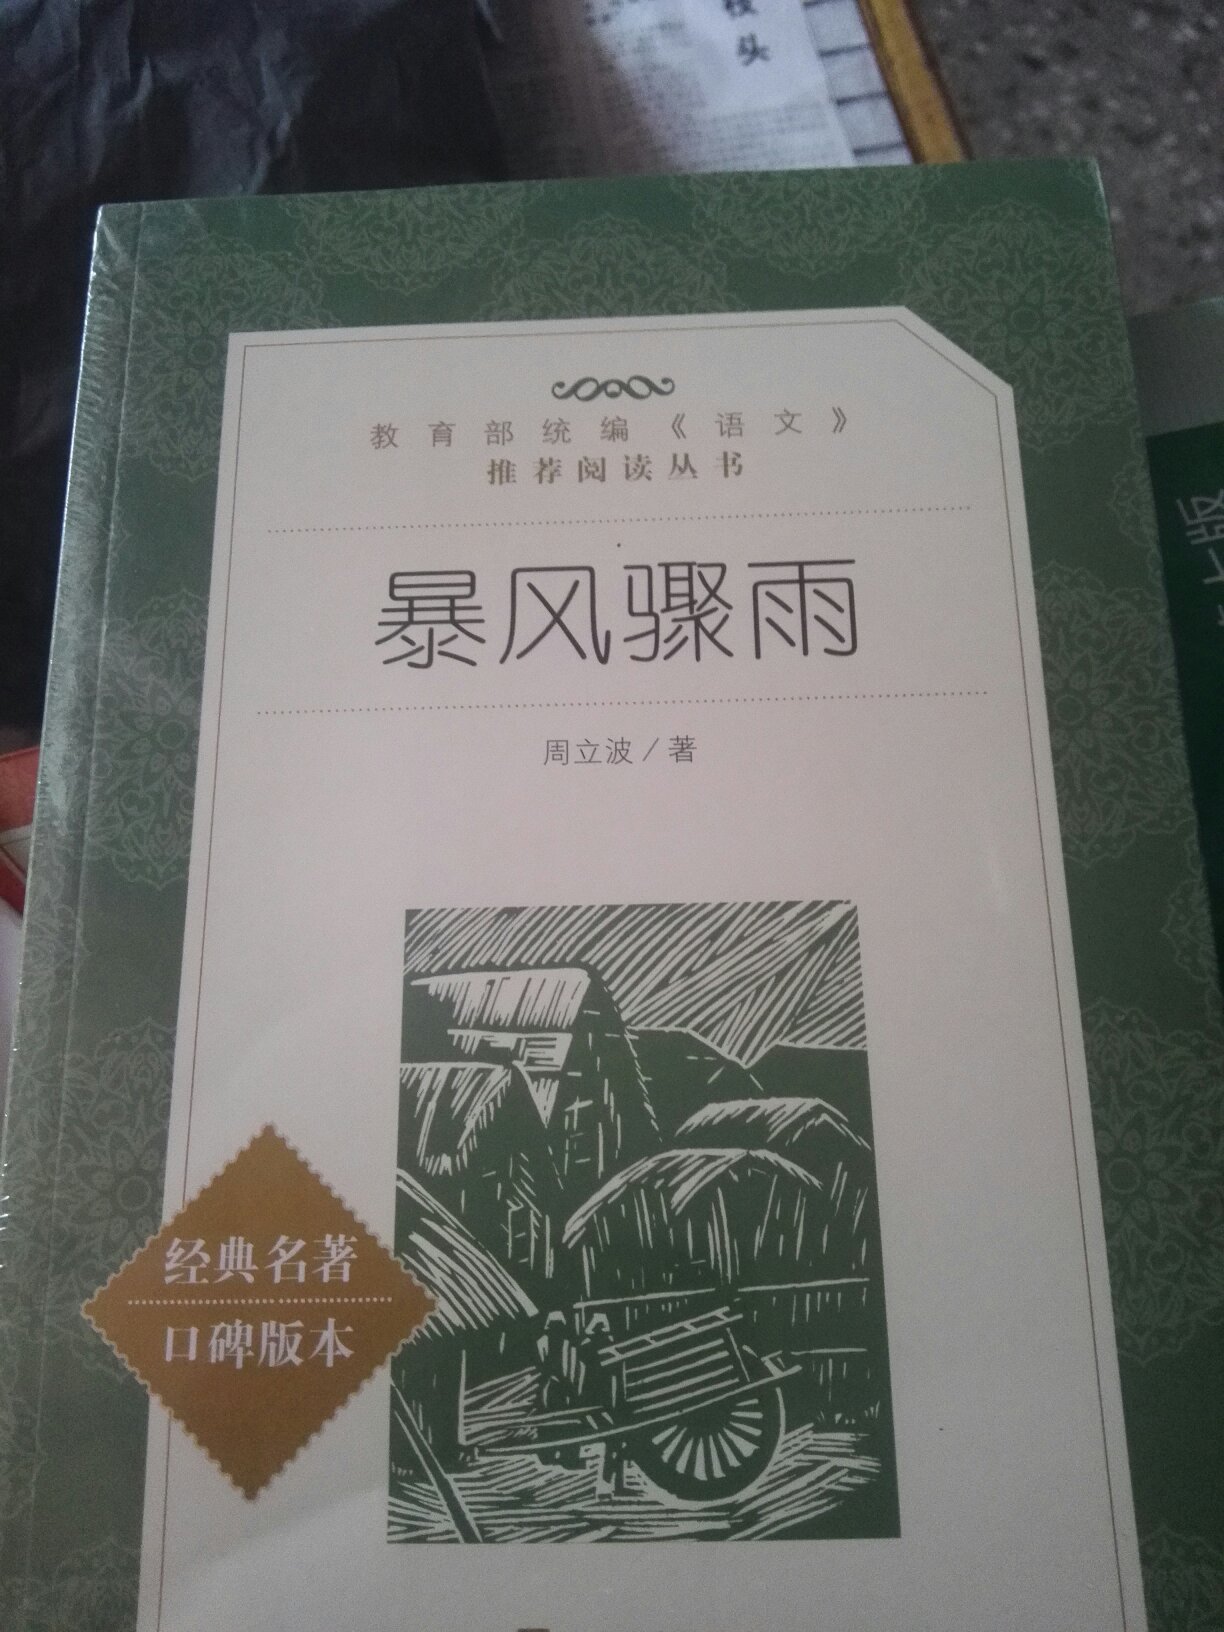 中国现代文学经典作品，真实反映了新中国刚解放时的农村真实情况，值得一读！